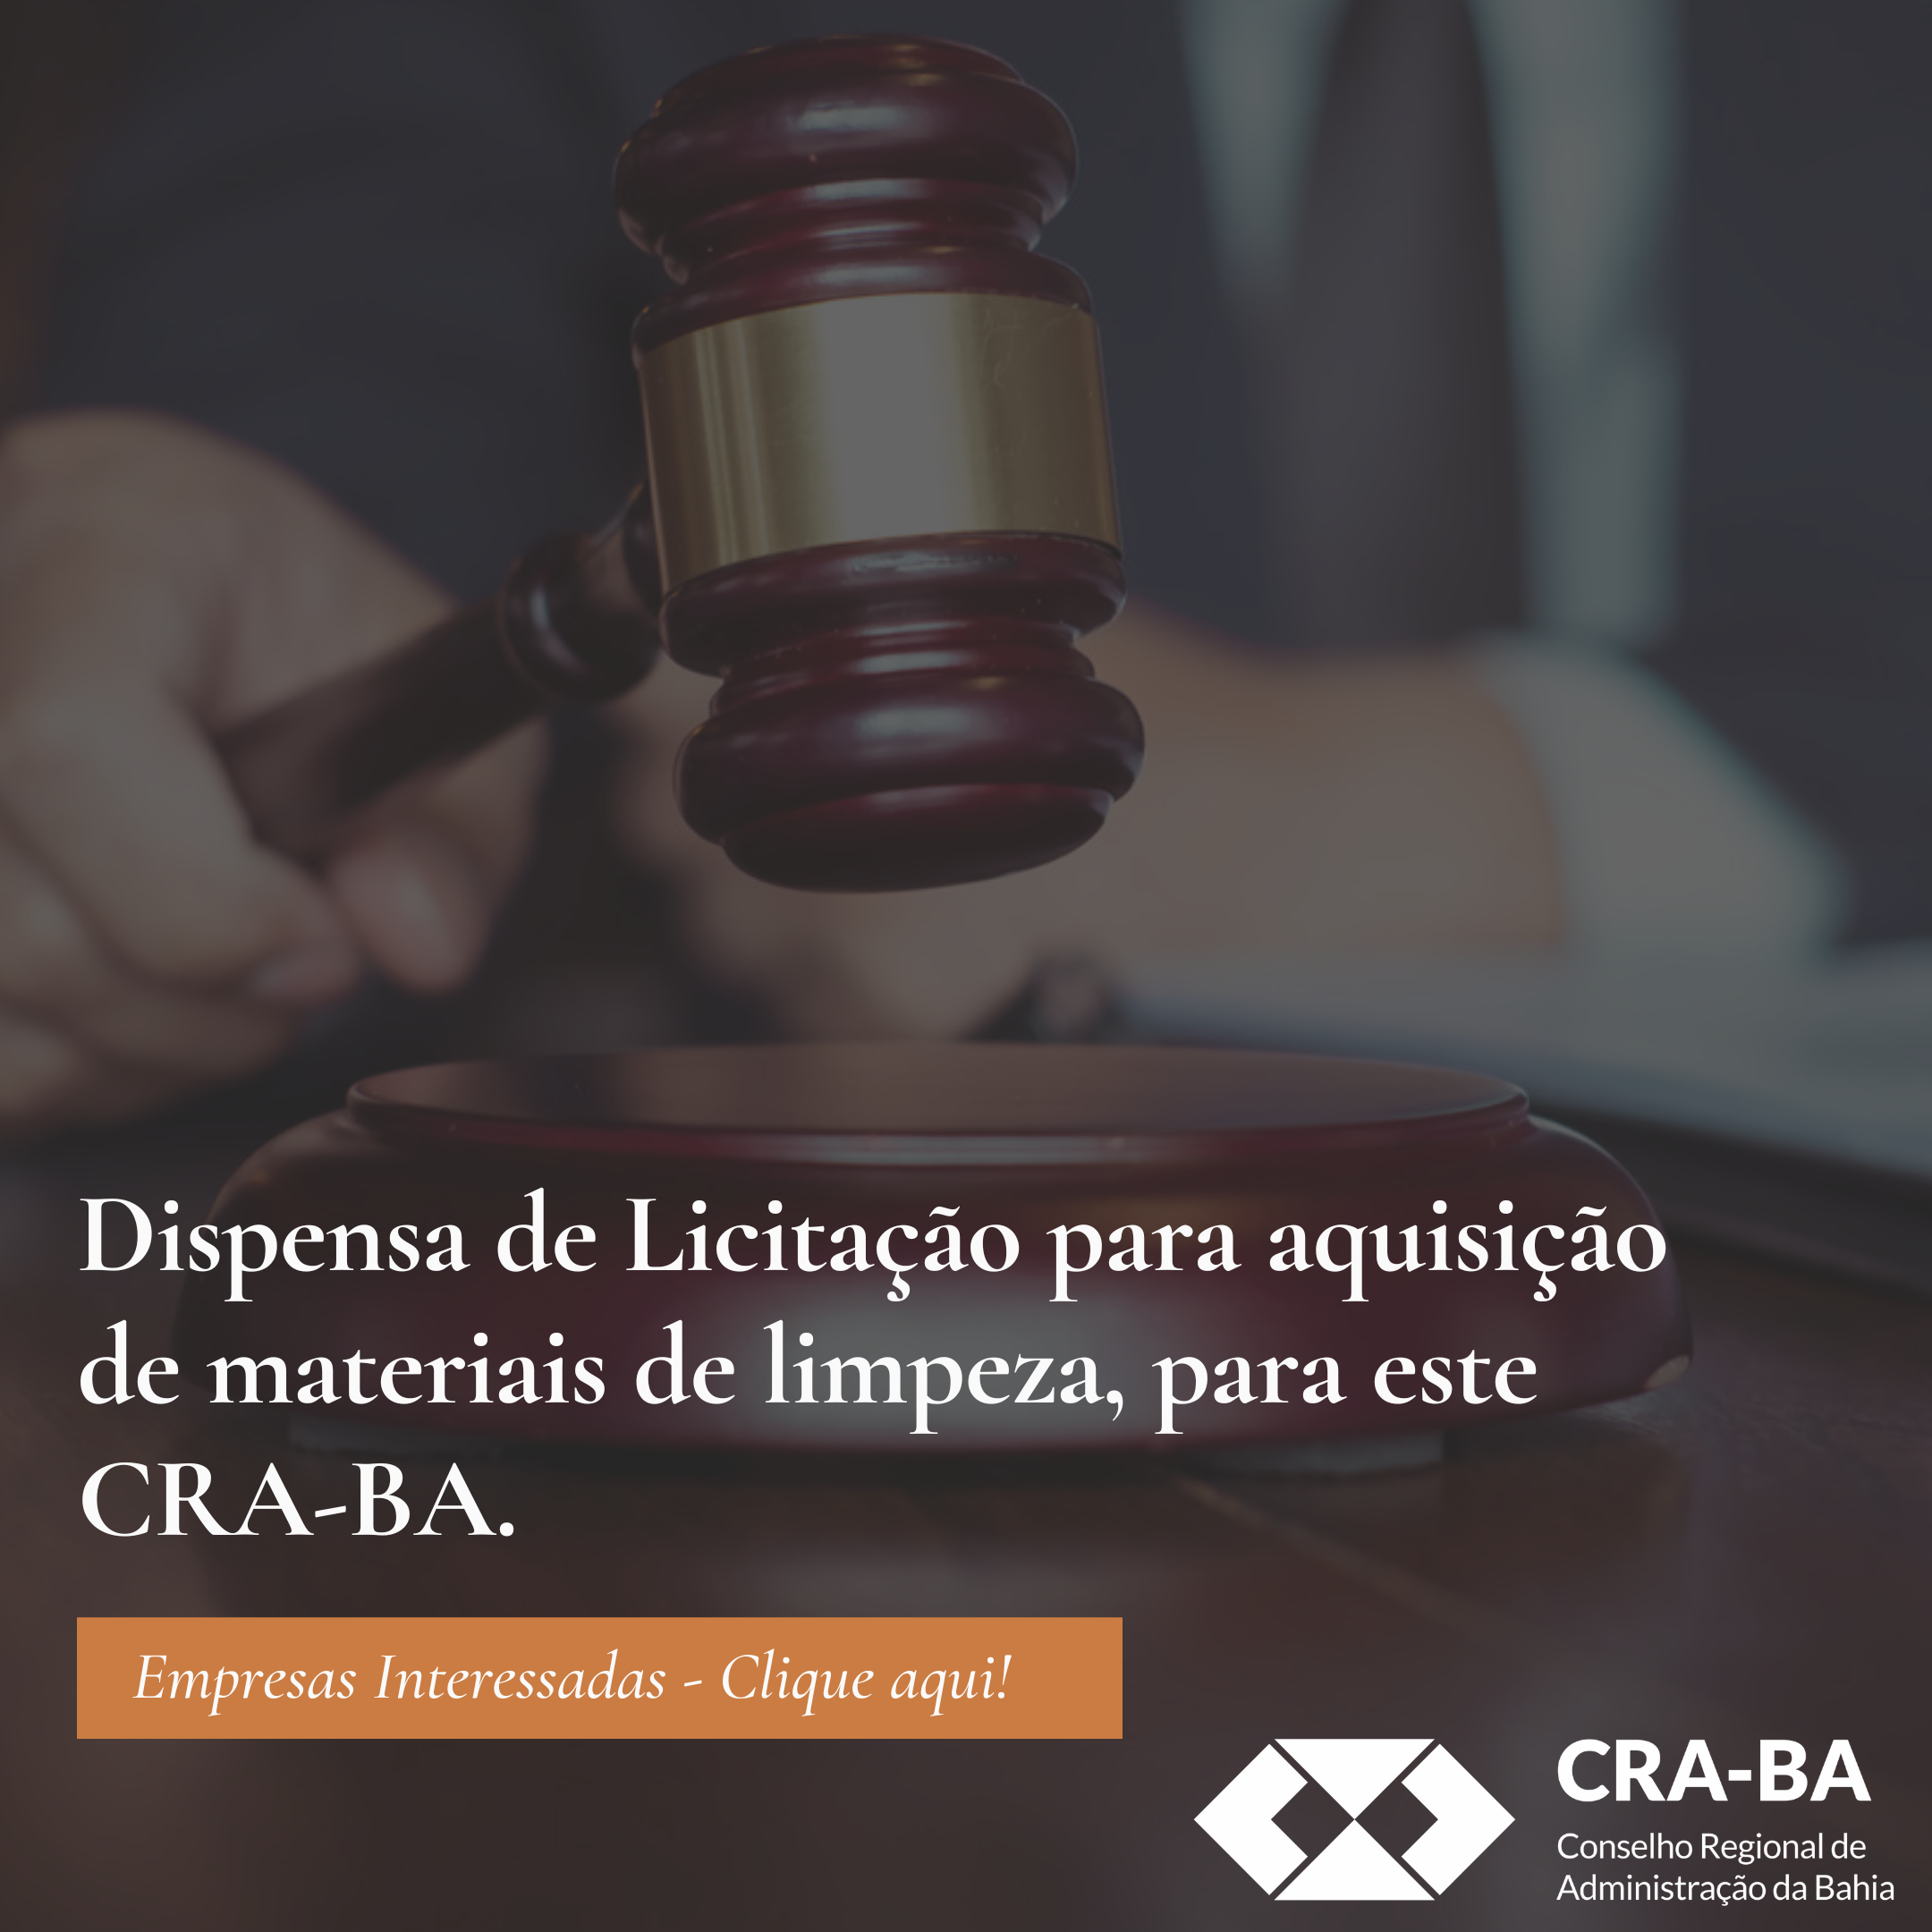 You are currently viewing Dispensa de Licitação para aquisição de materiais de limpeza, para este CRA-BA